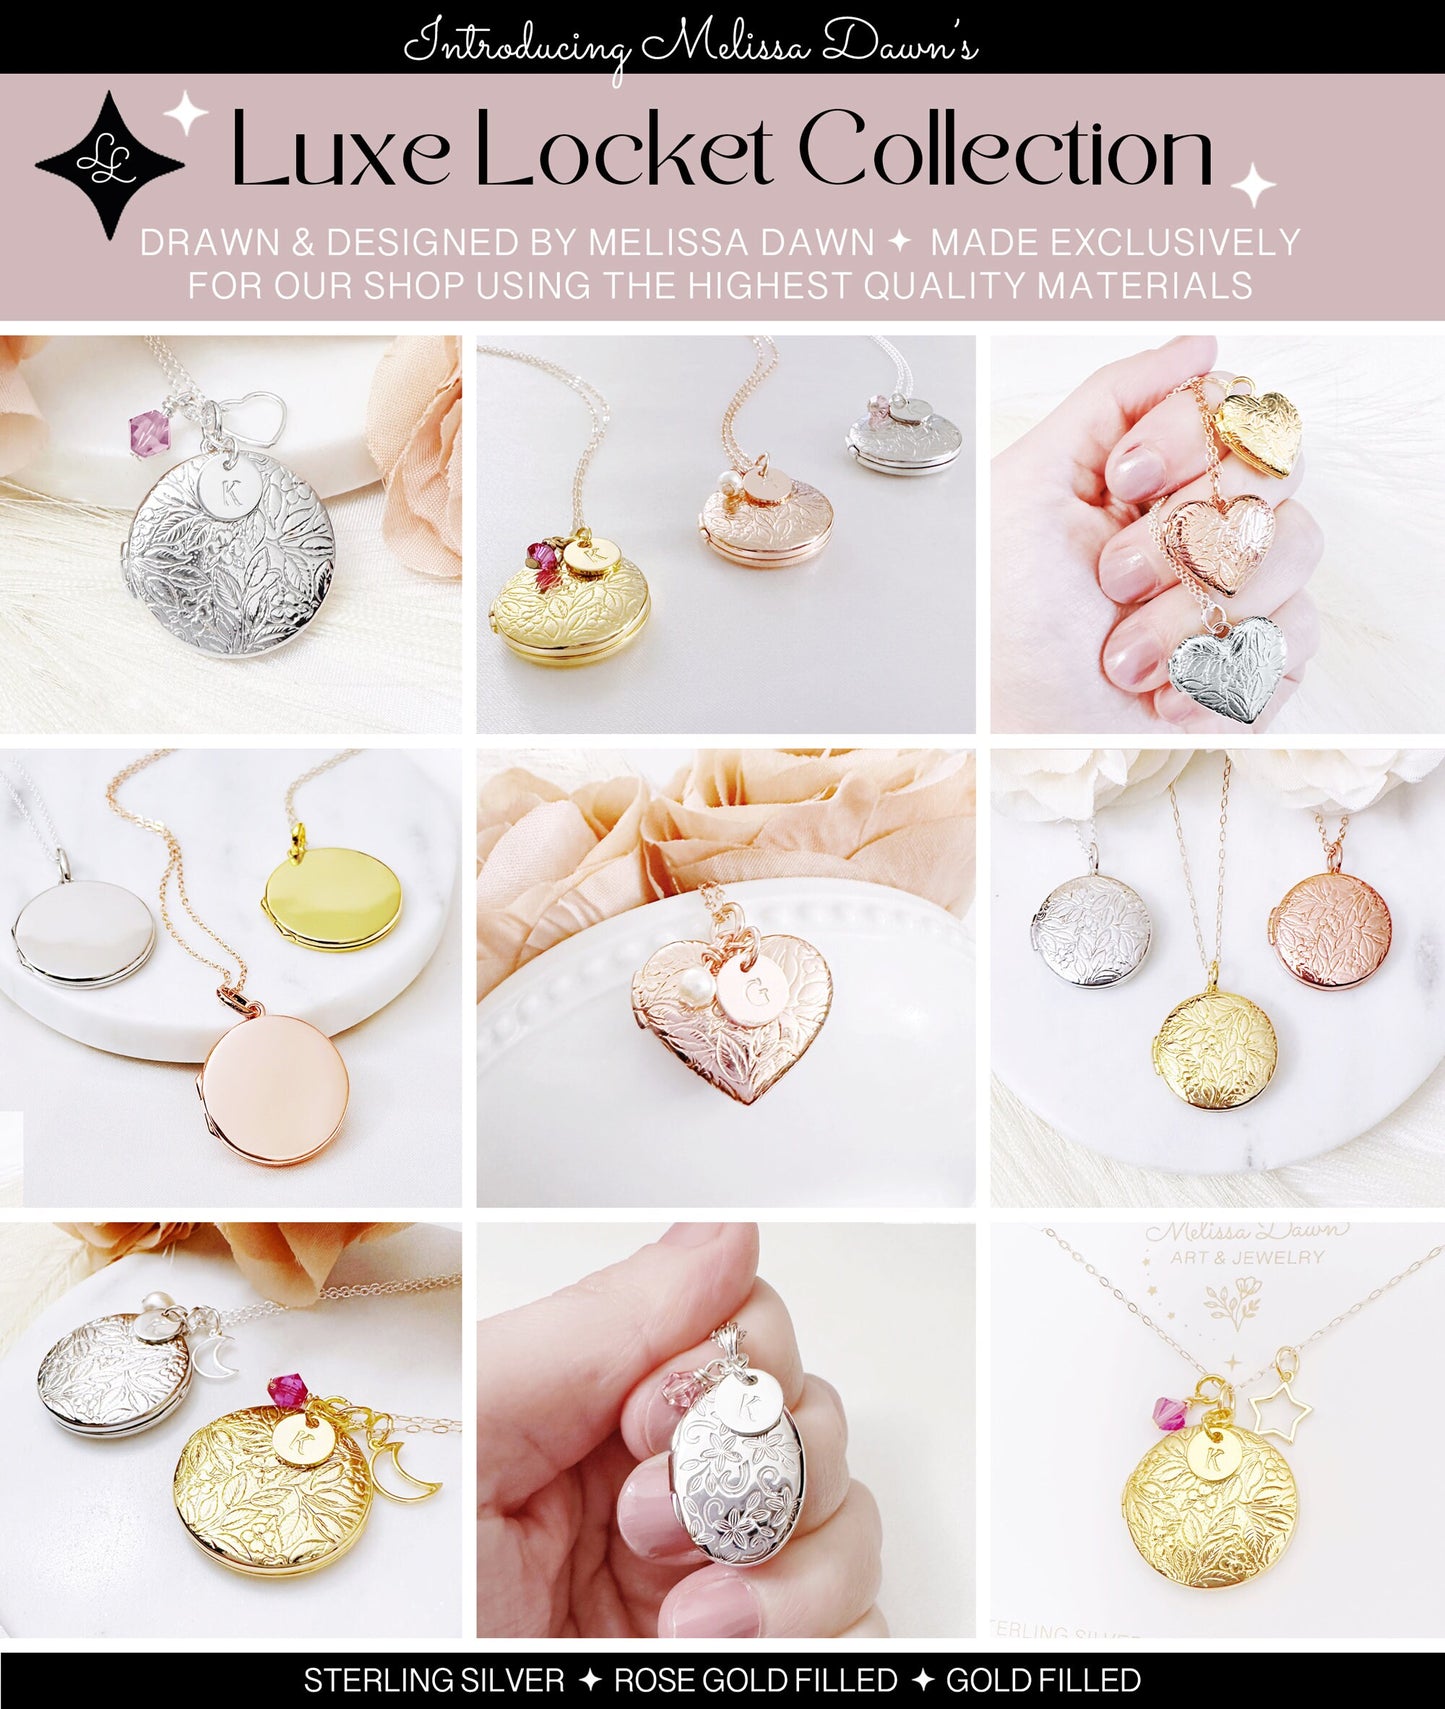 Rose Gold Filled Locket / Flower Locket / Locket Necklace/ Sterling Silver Locket / Gold Filled Locket Necklace / Round Locket/ Photo Locket